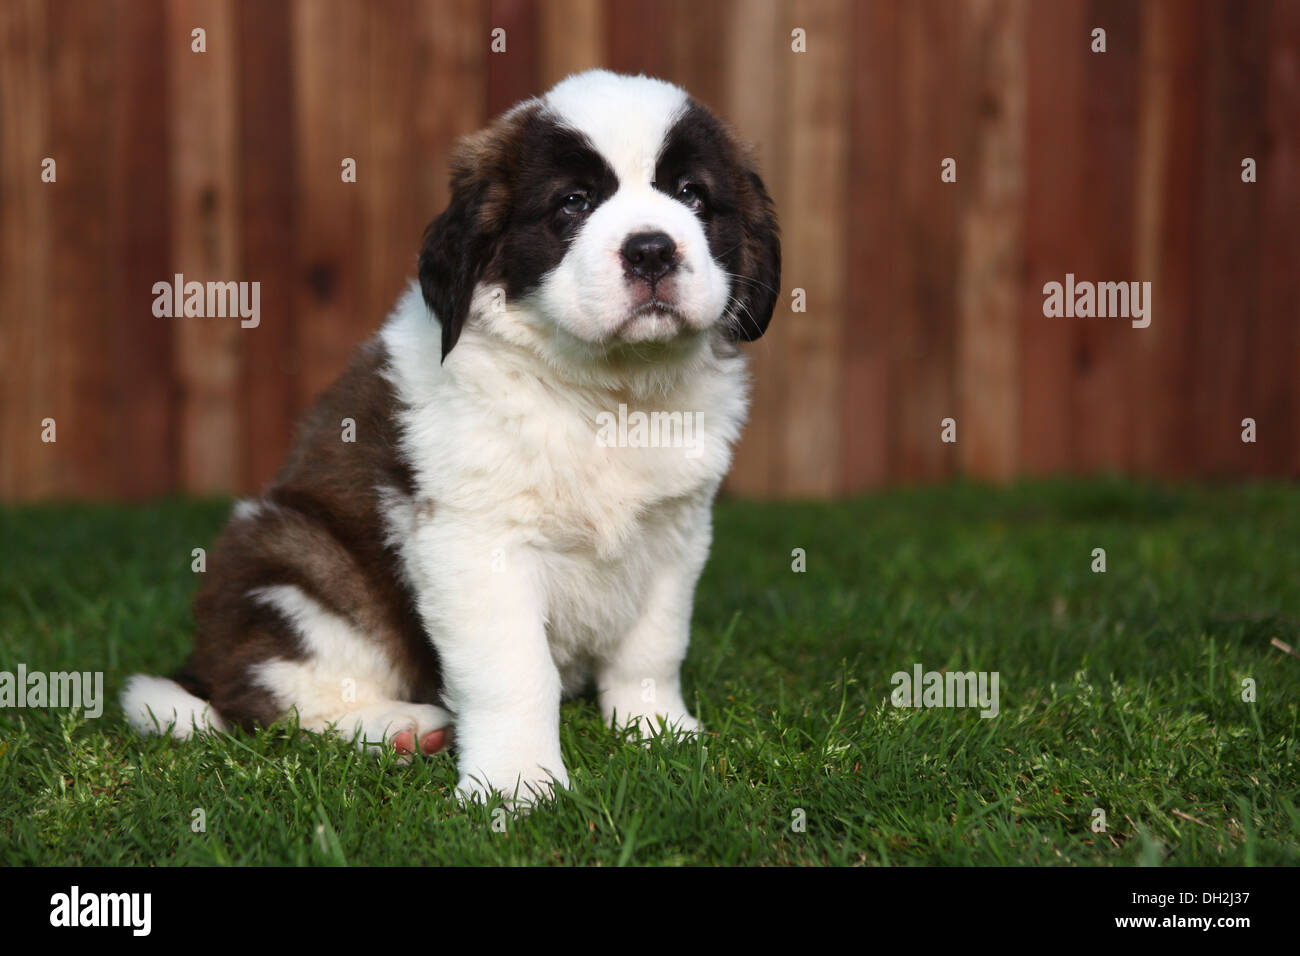 San bernardo raza de perro fotografías e imágenes de alta resolución -  Página 12 - Alamy